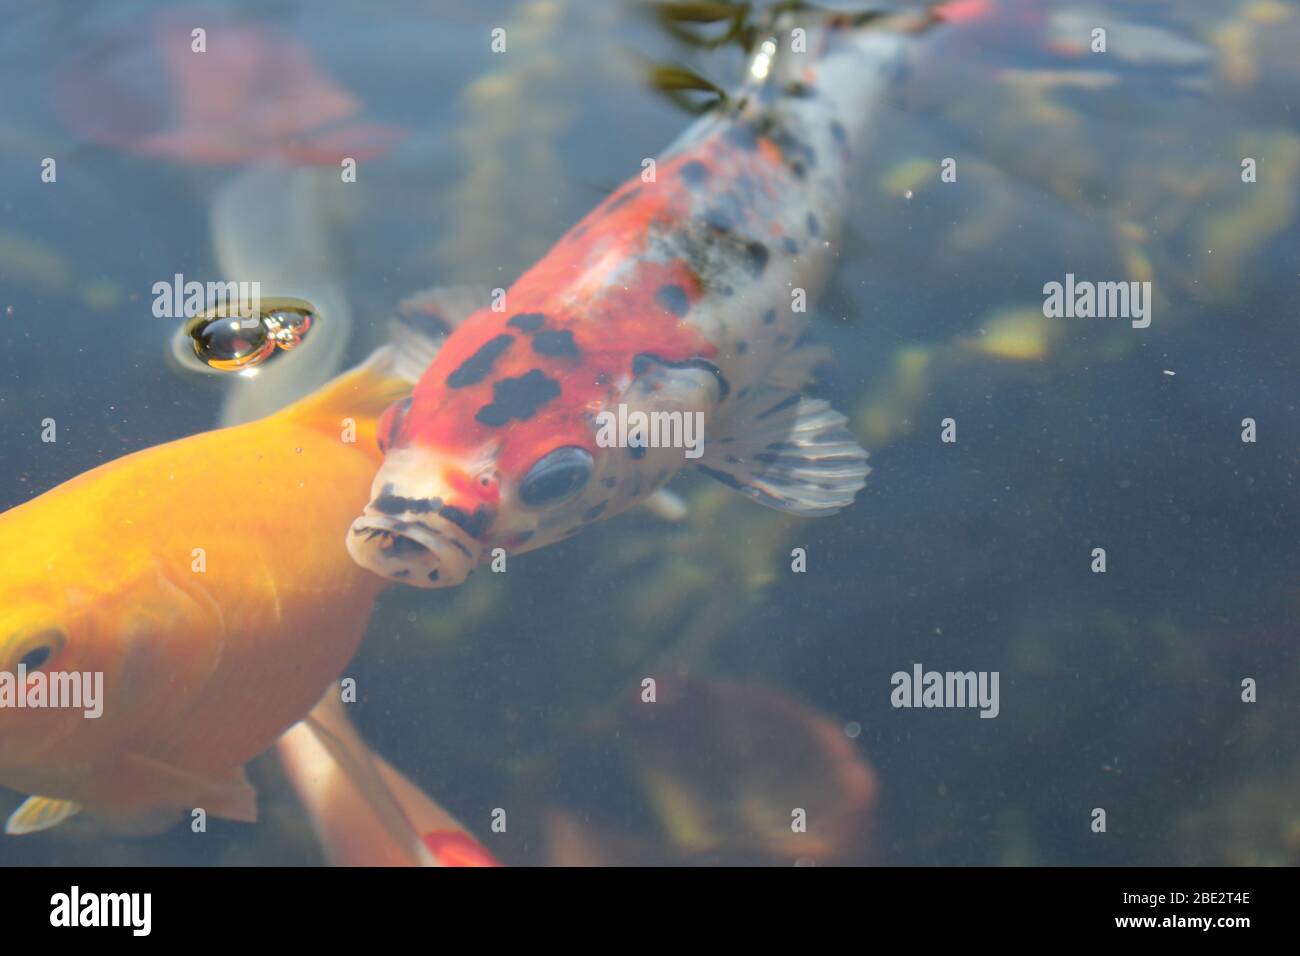 One goldfish and one shubunkin close up Stock Photo